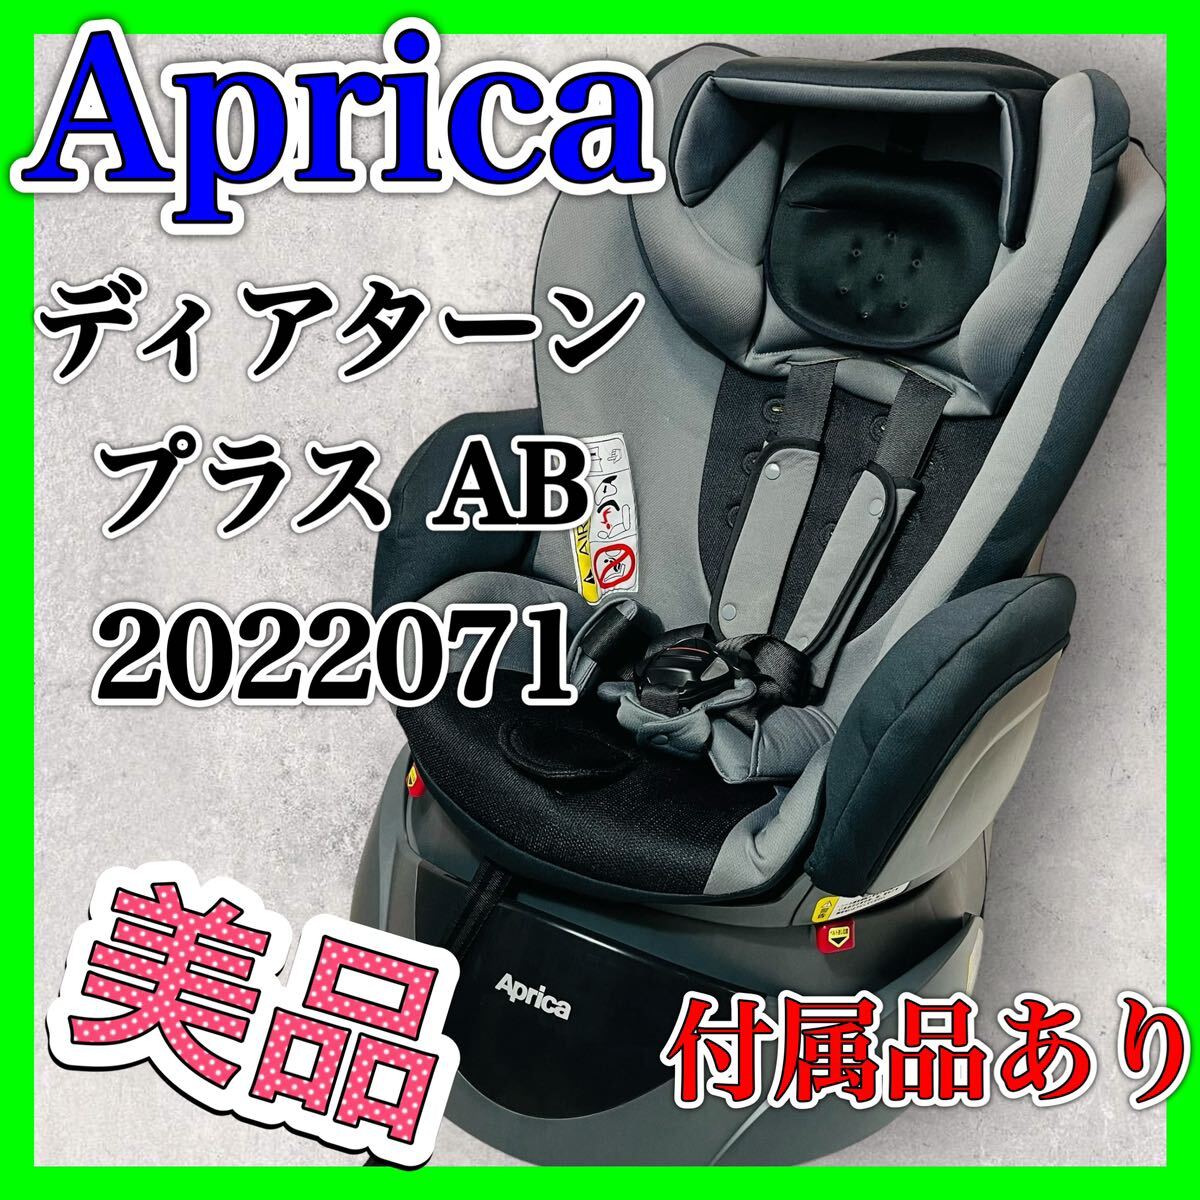  Aprica tia Turn плюс AB серый детское кресло 2022071 детское сиденье Aprica товары для малышей 